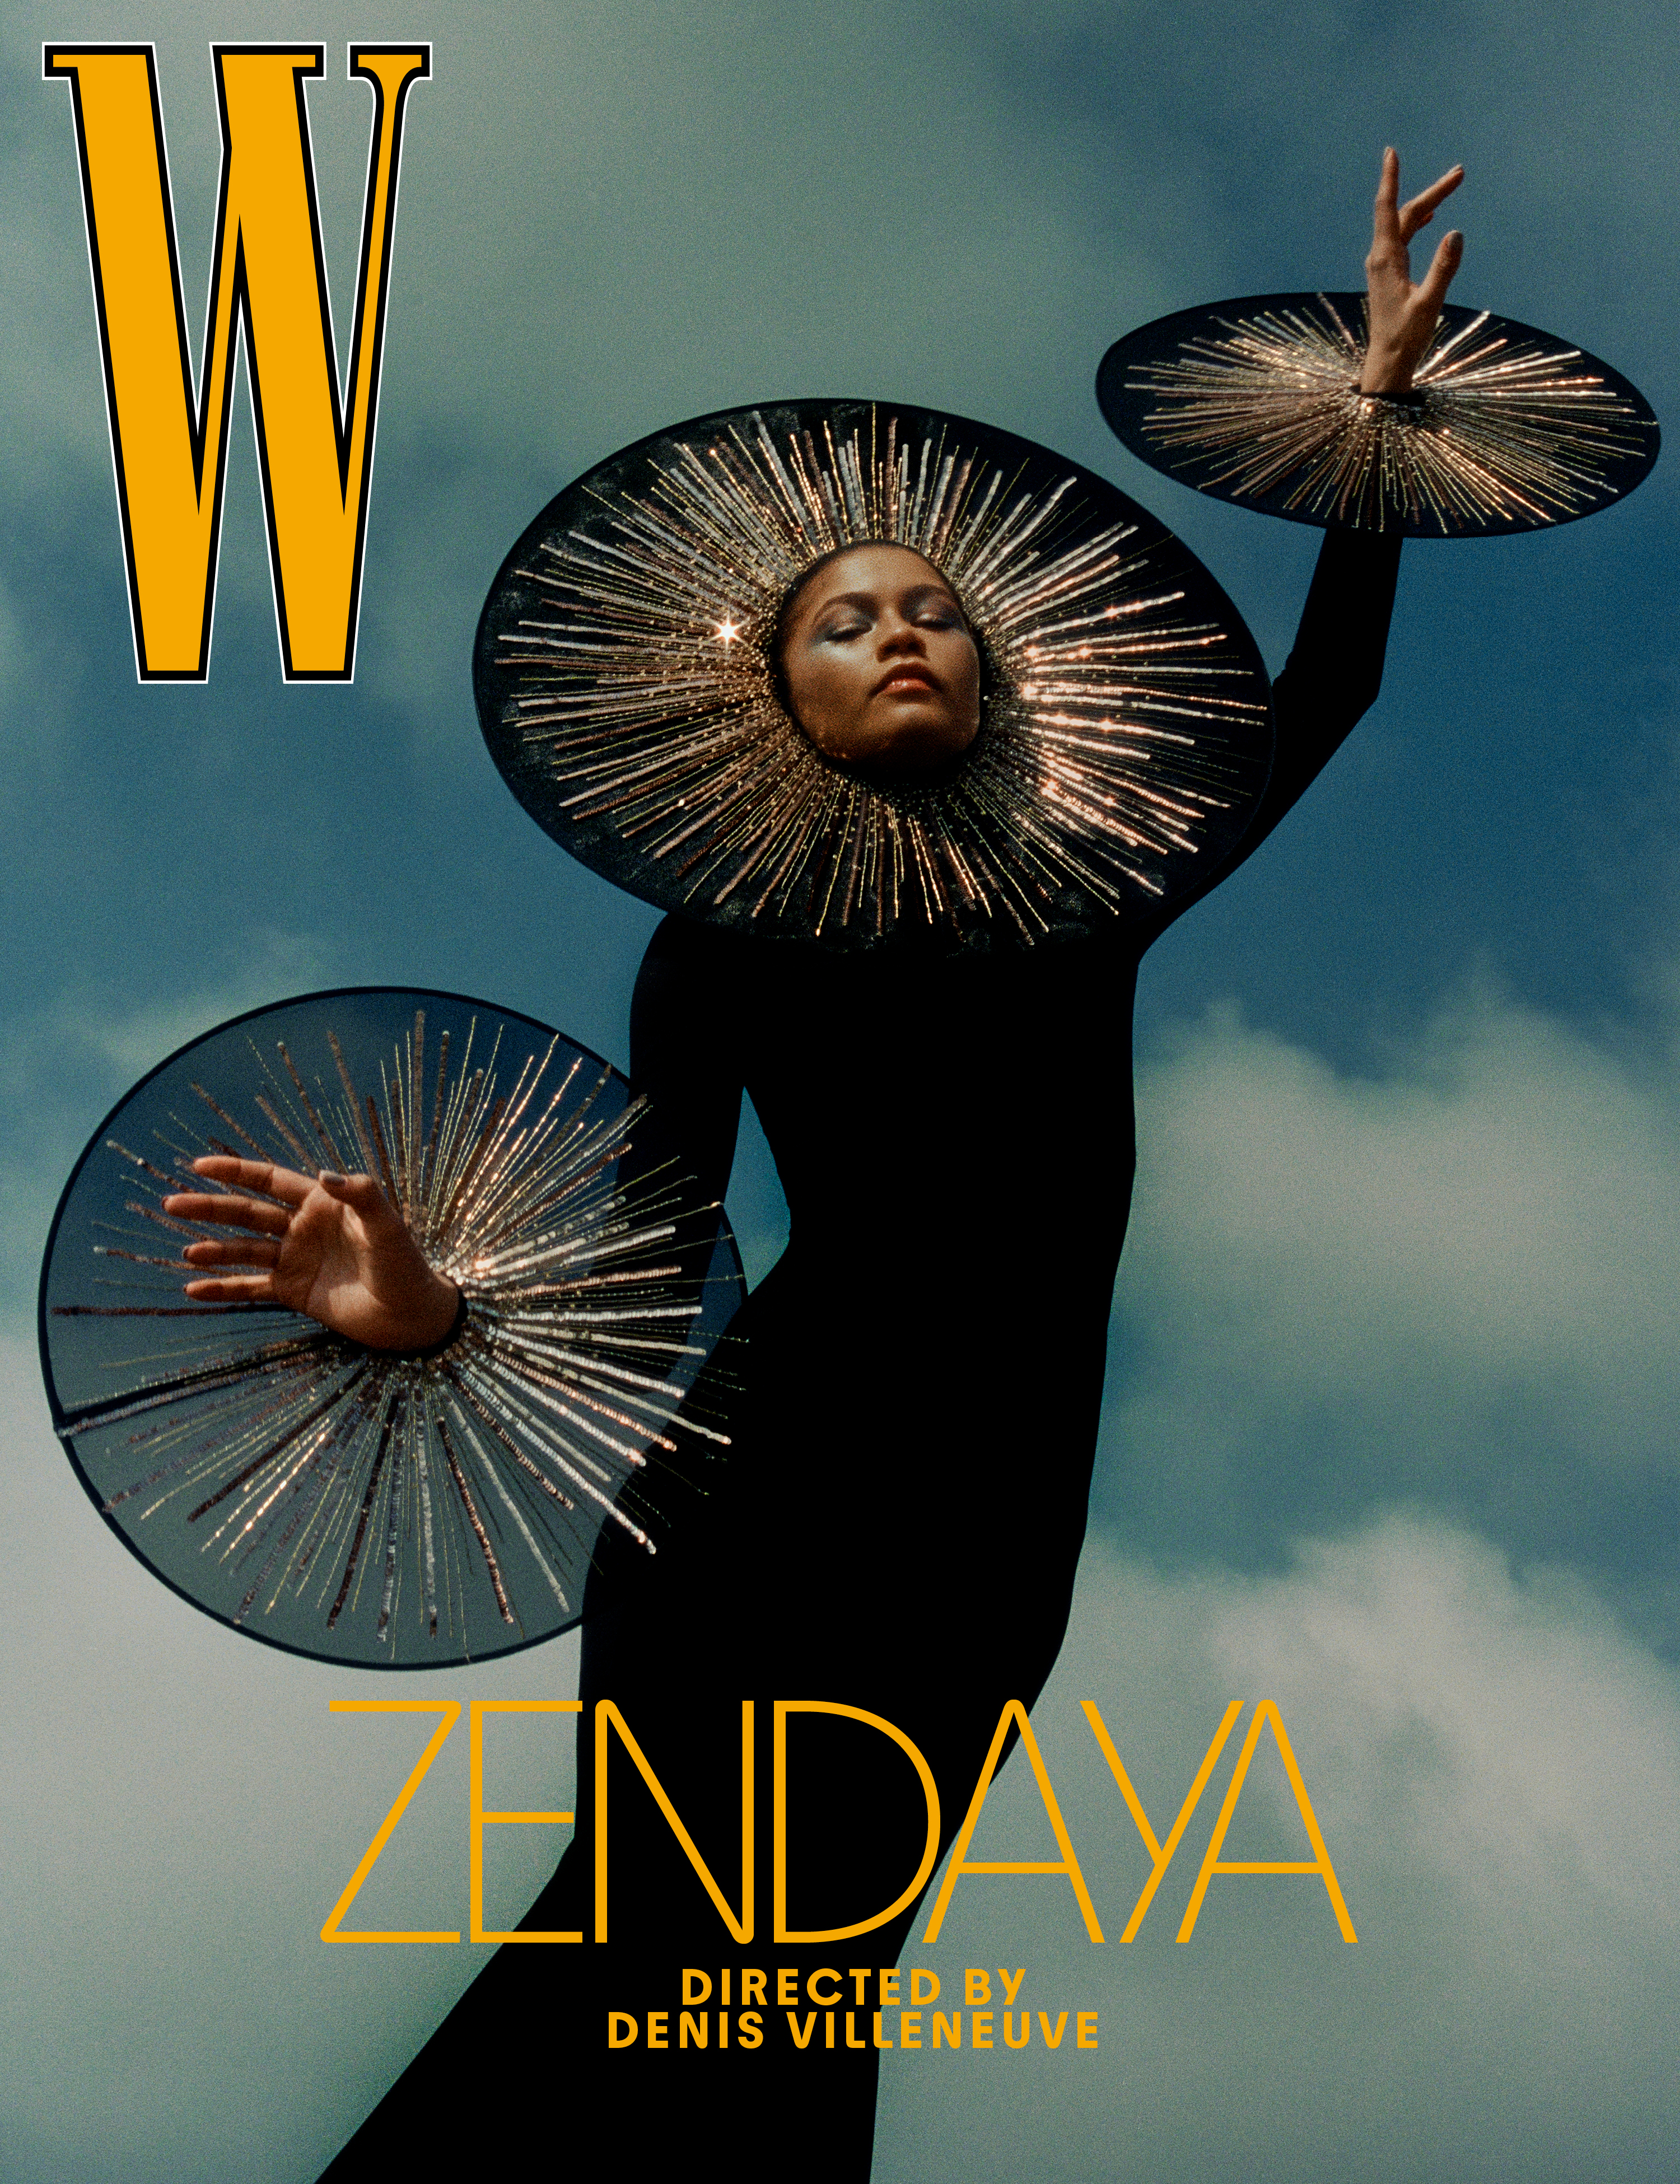 W - “Zendaya” Volume 2, The Directors Issue 2022